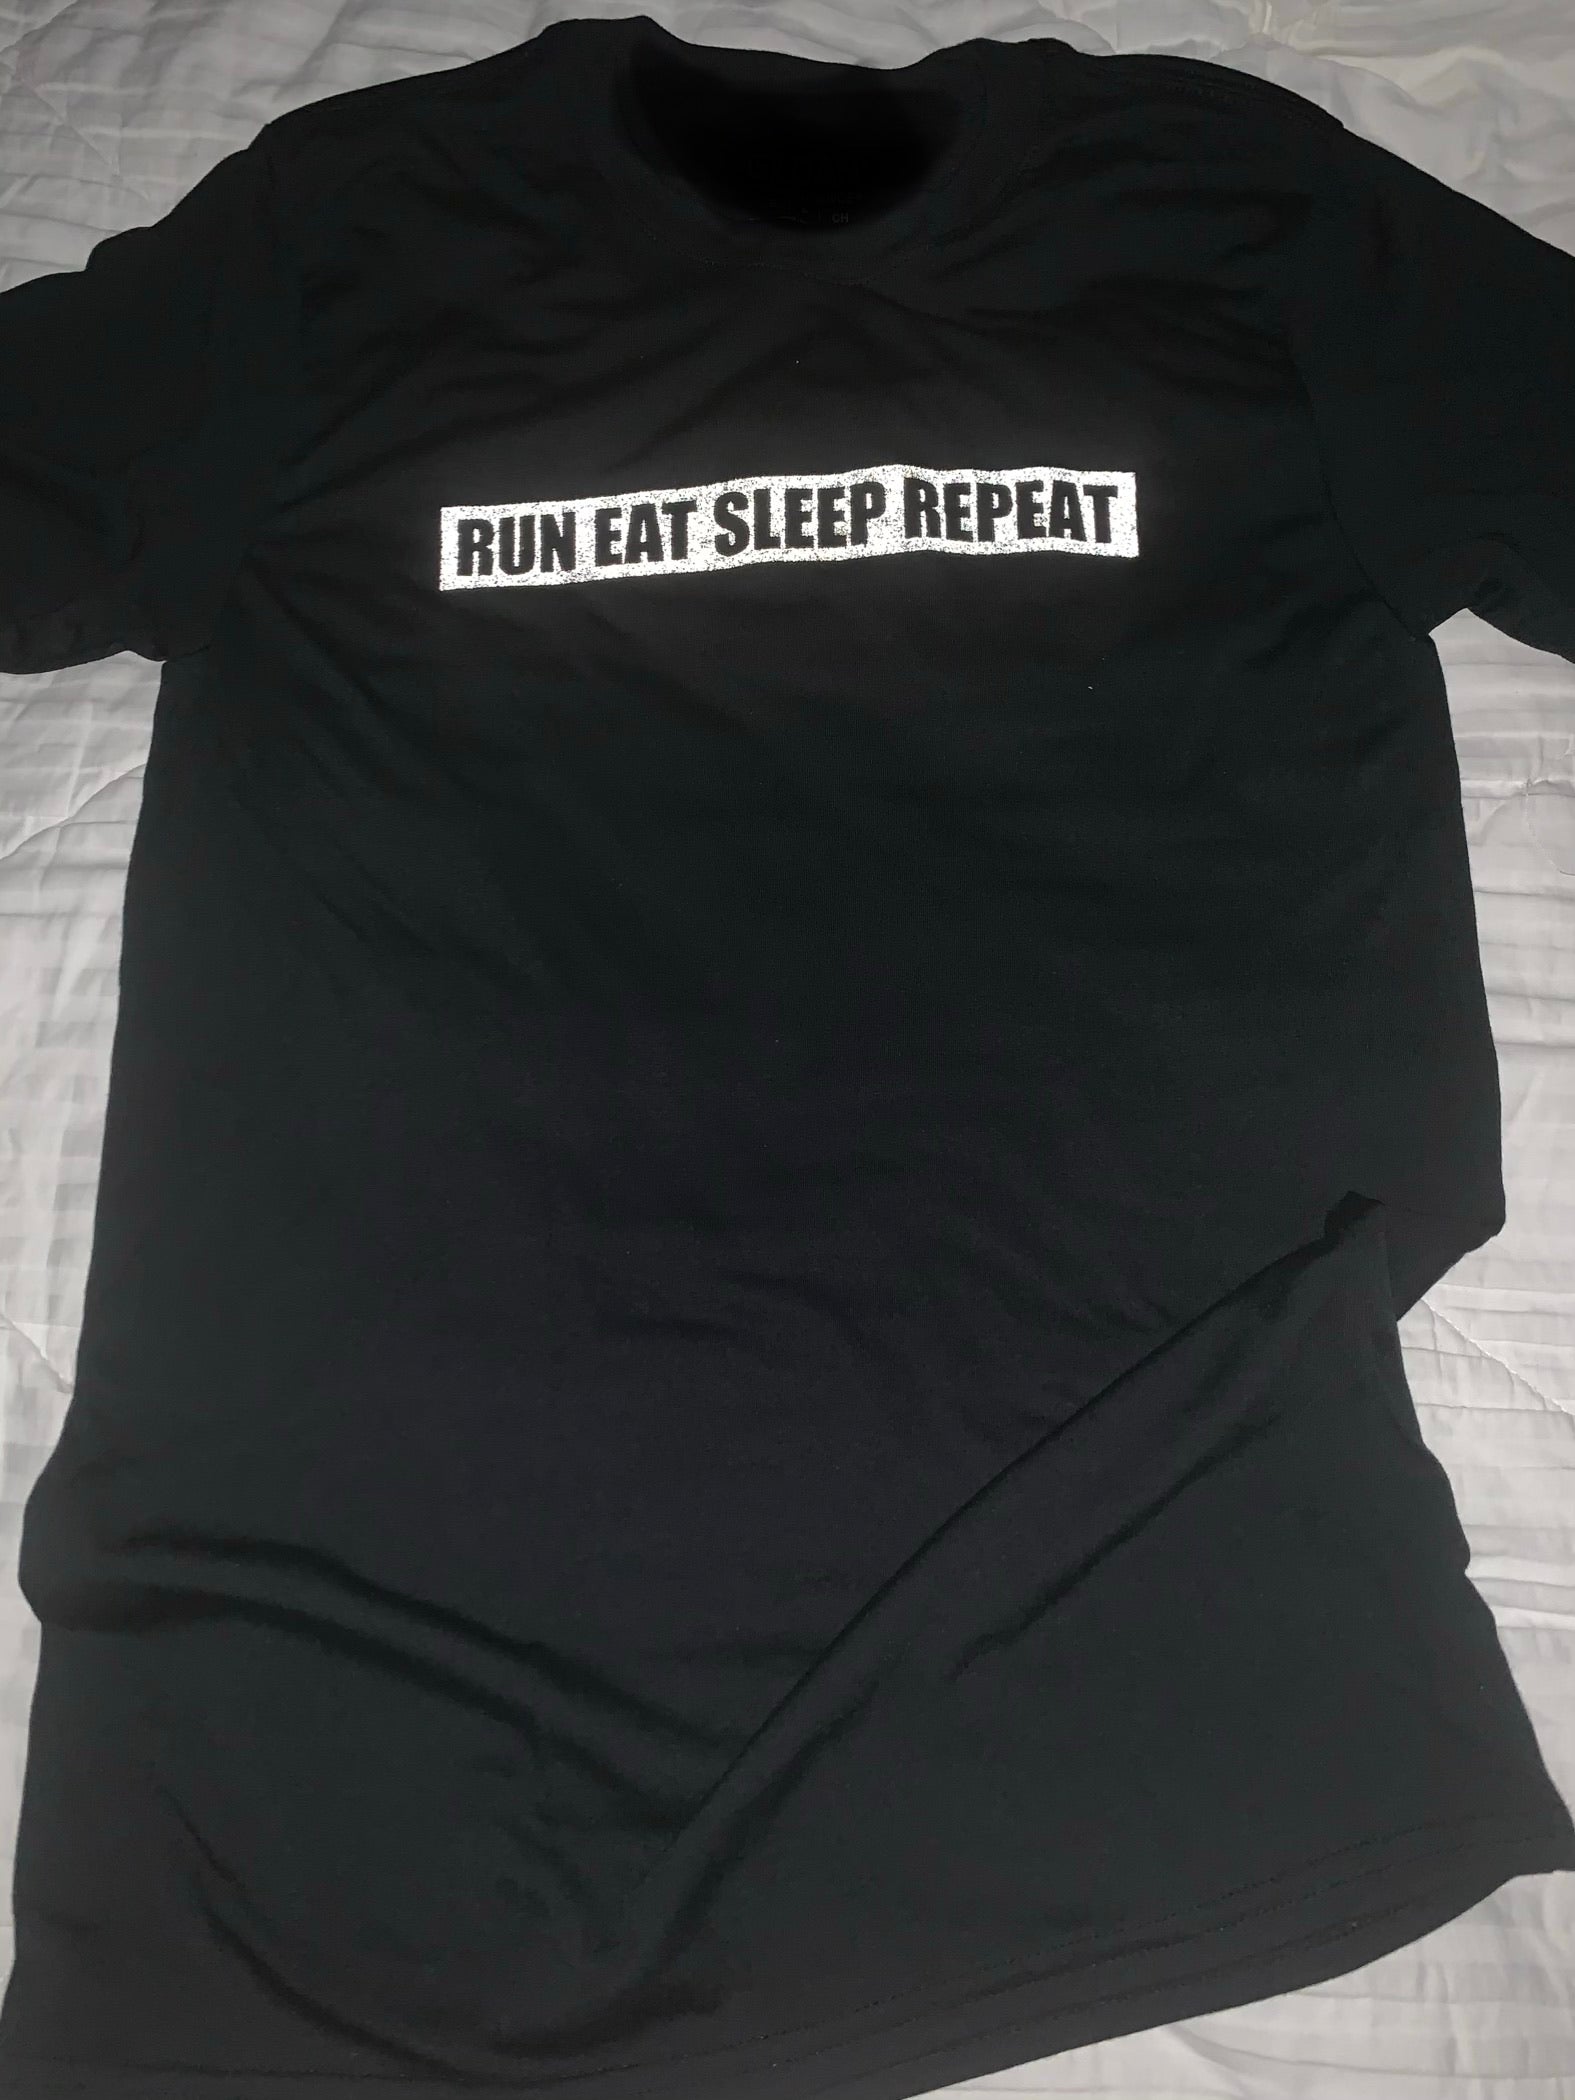 run eat sleep repeat reflective running shirt moisture wicking